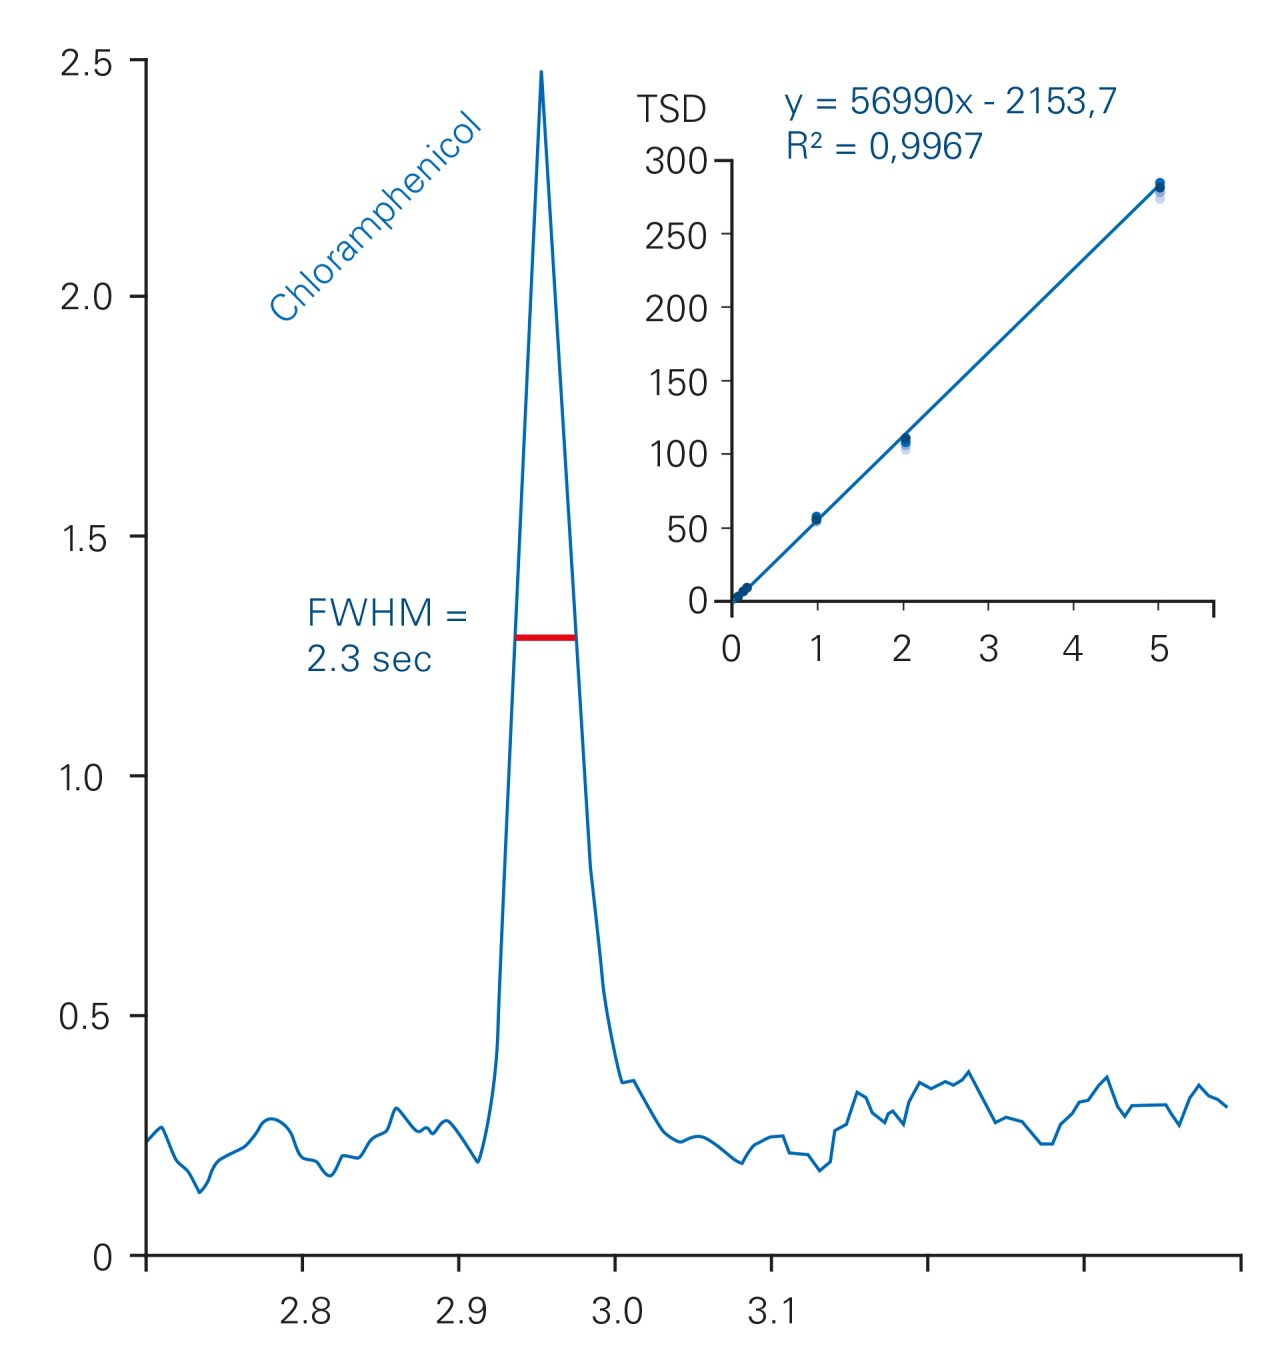 所示为氯霉素在蛋基质中的色谱峰宽度在半最大值时(2.1 - 2.4秒范围)。